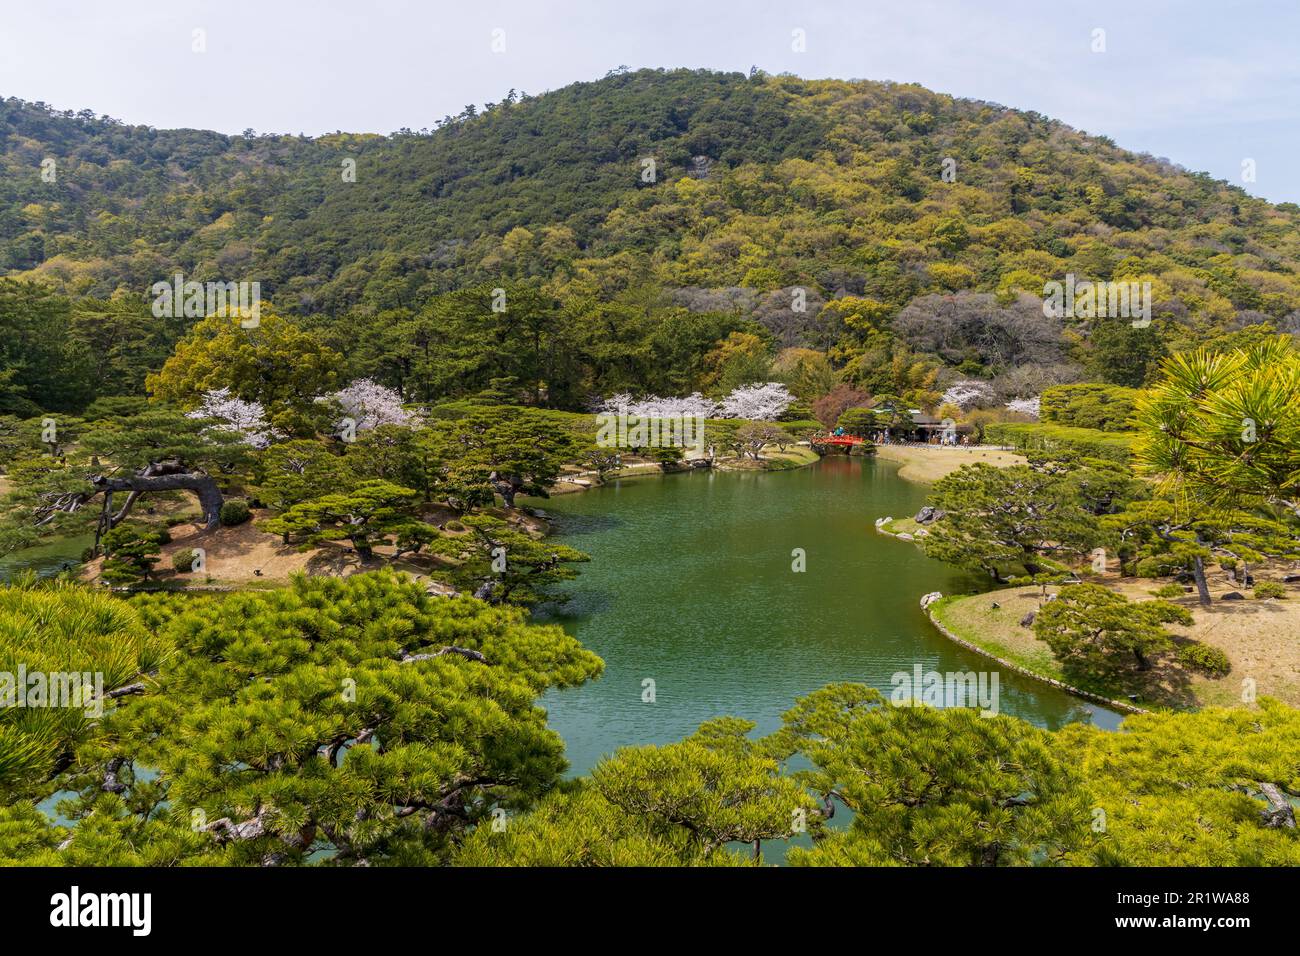 Ritsurin Garden dans la ville de Takamatsu, préfecture de Kagawa, Japon, l'un des plus célèbres jardins historiques japonais. Banque D'Images